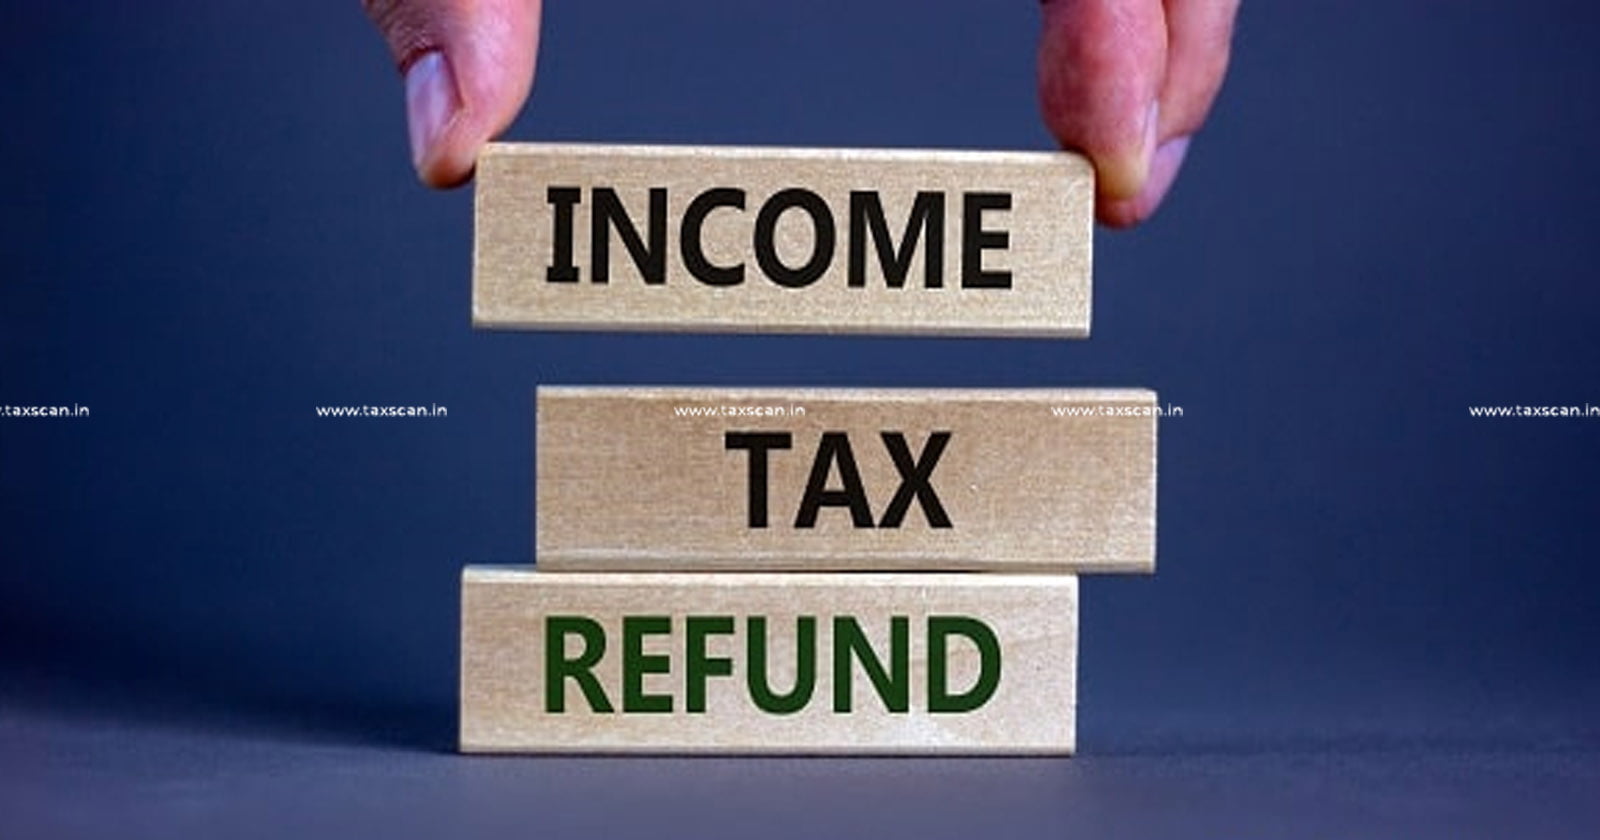 Delhi High Court - Delhi HC - Income Tax Act - Income Tax - Income Tax Act Section 220(6) - Arbitrary tax refund adjustment - Taxscan